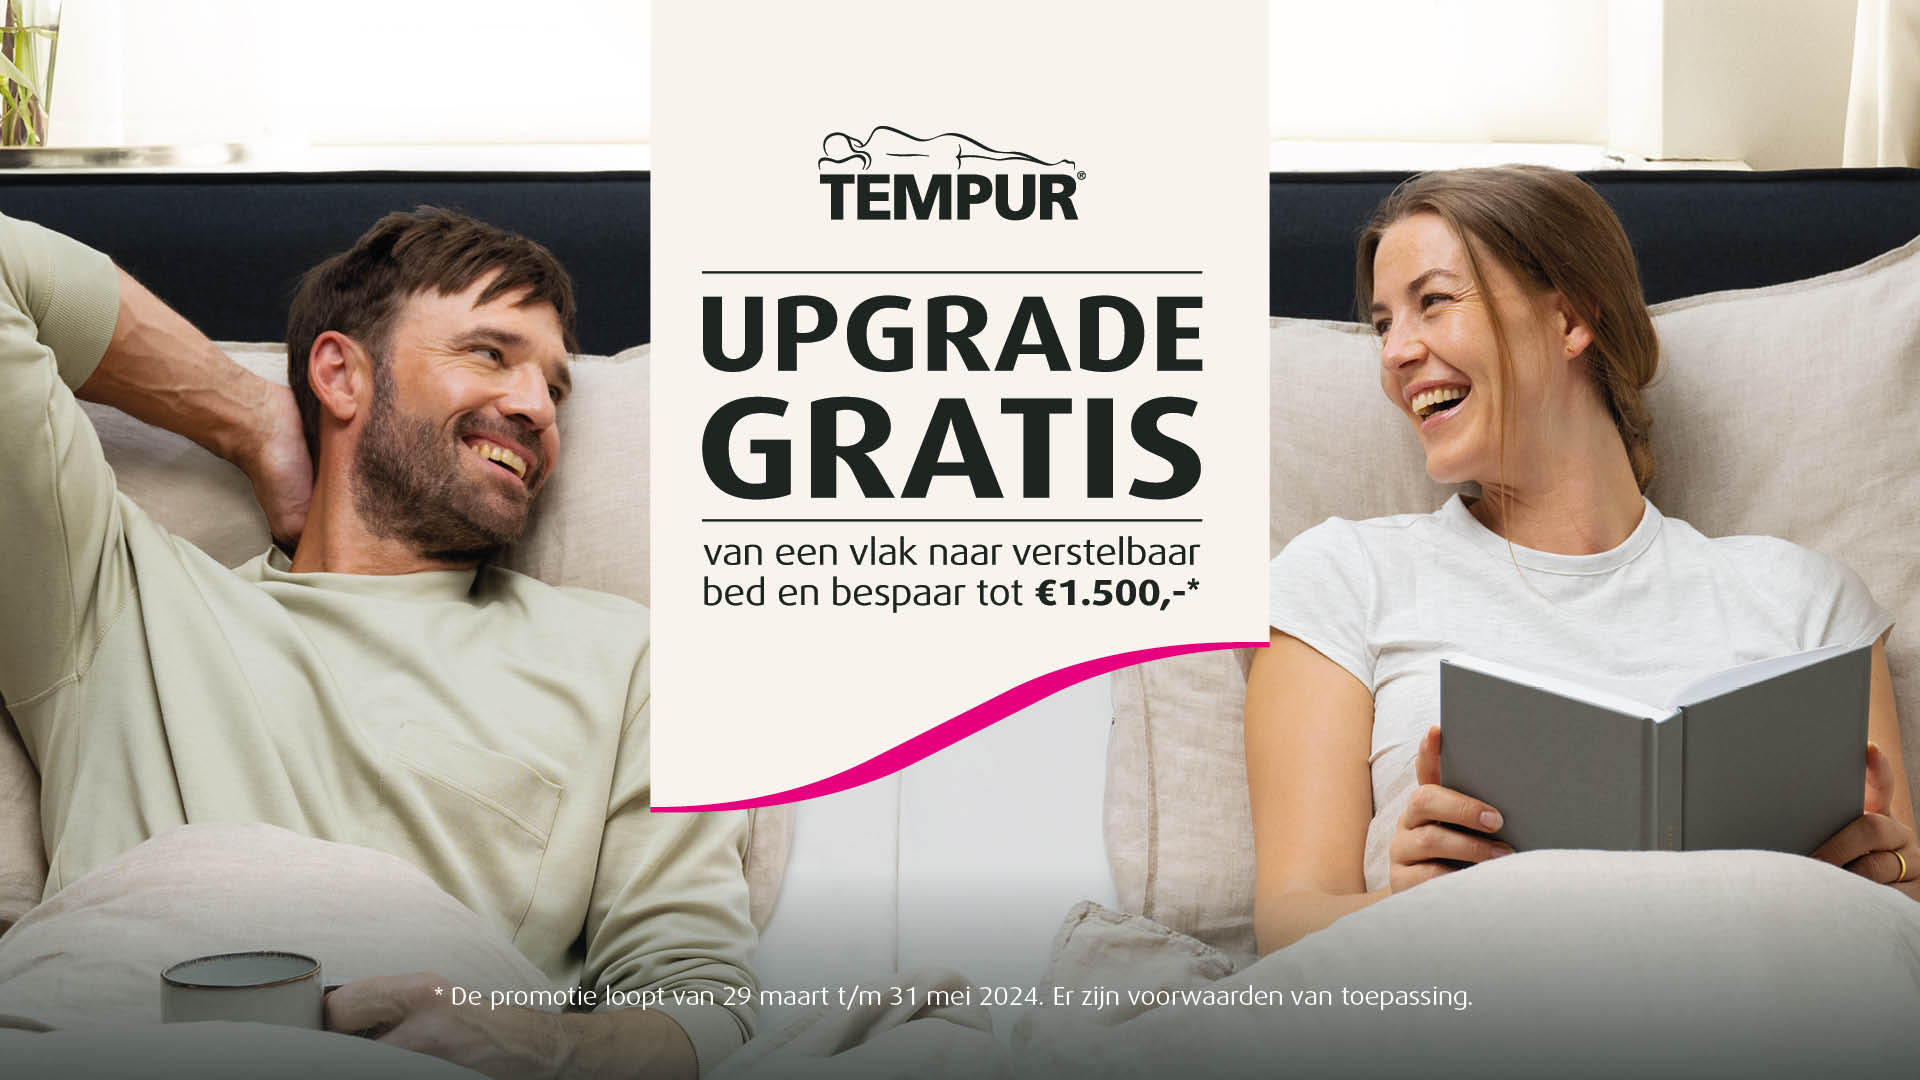 Tempur aanbieding gratis upgrade verstelbaar bed